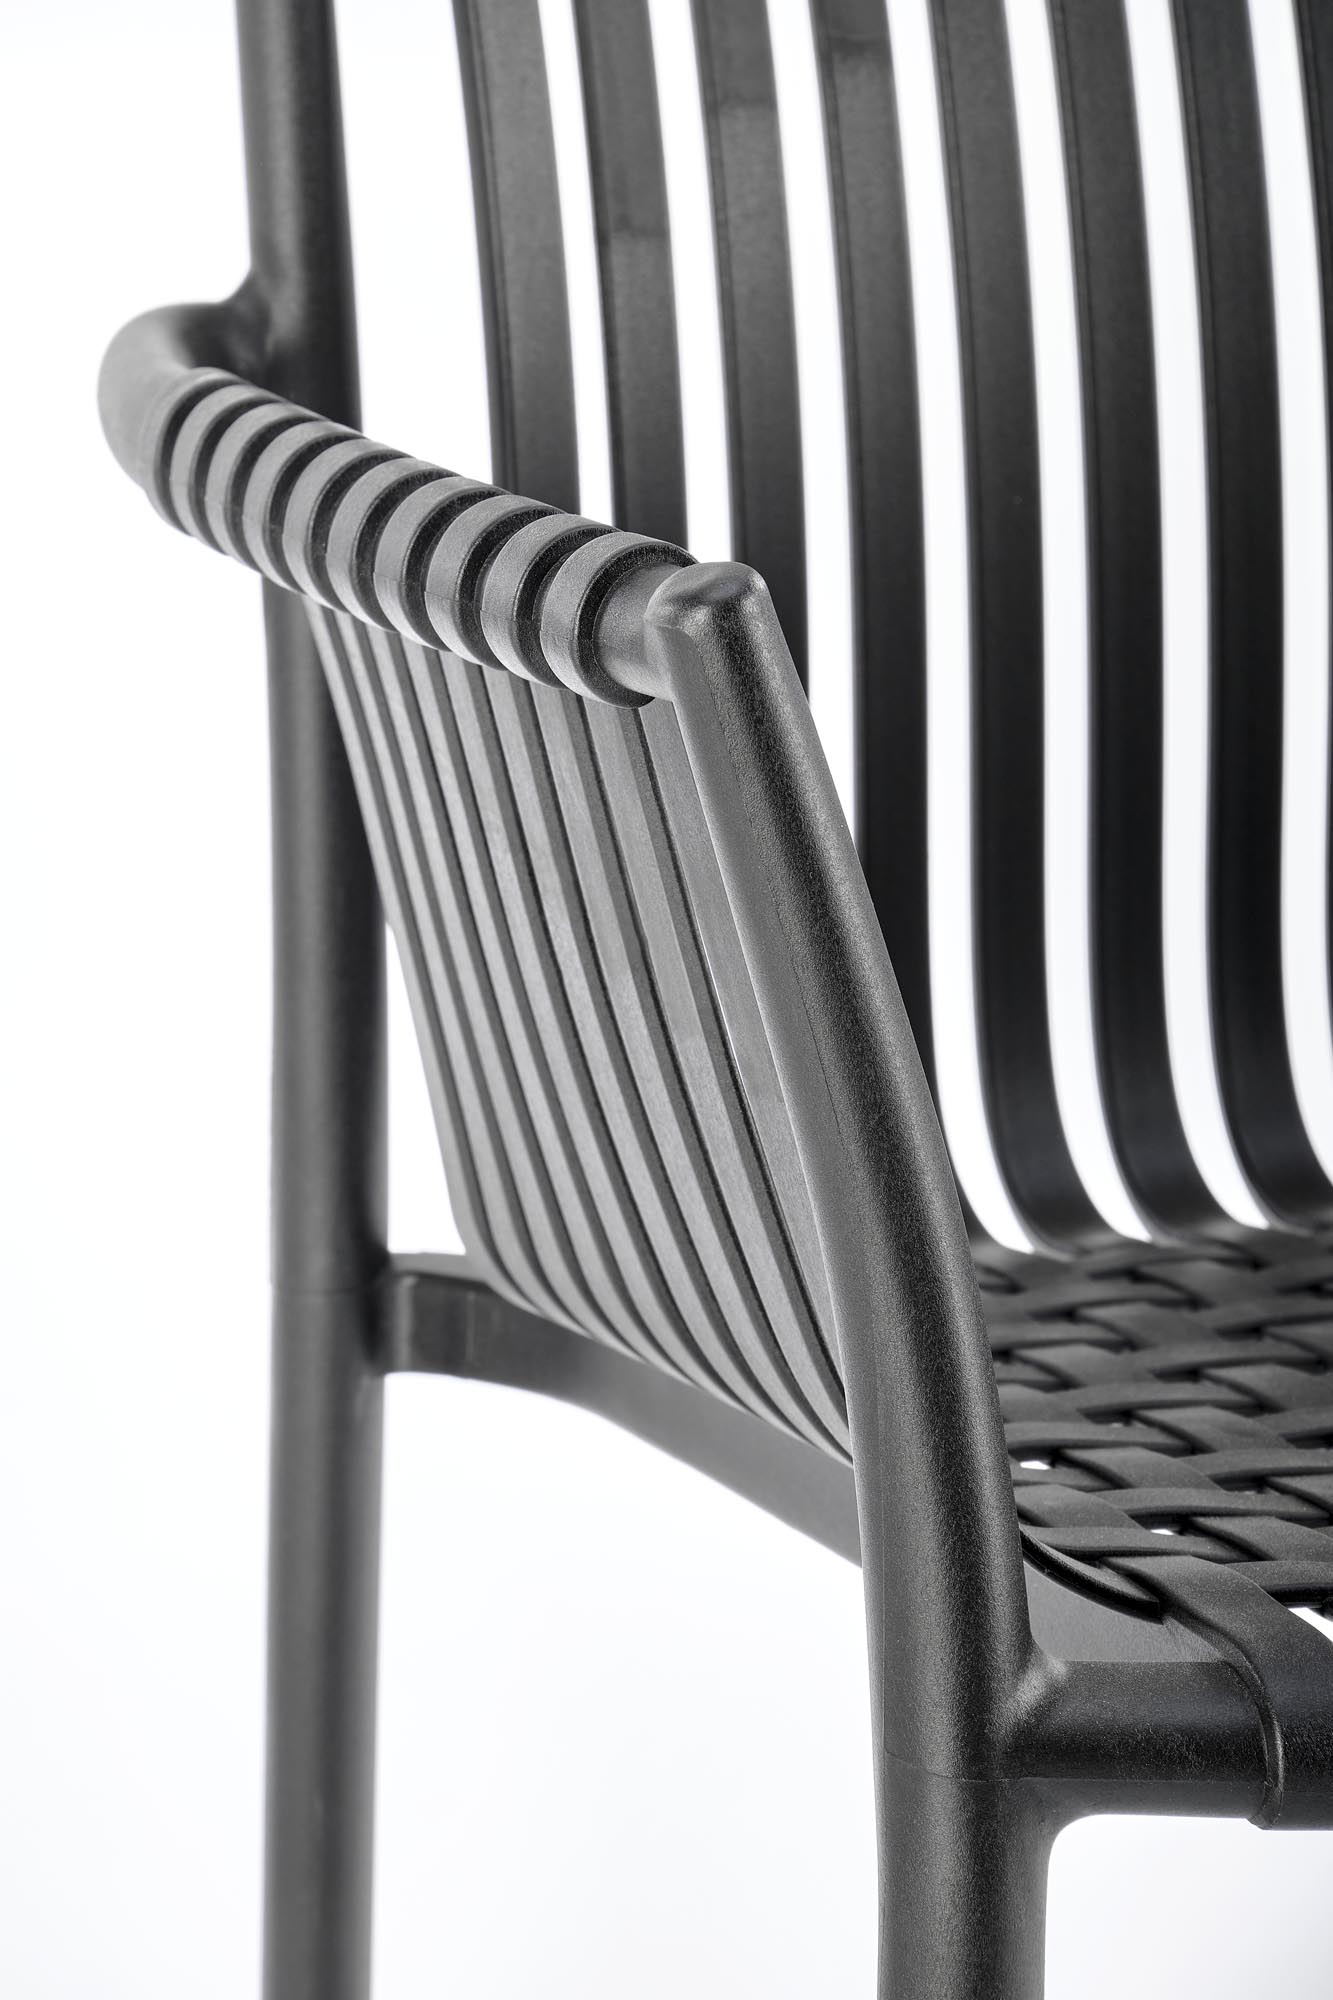 K492 Židle Fekete (1p=4szt) Židle z tworzywa sztucznego k492 - Fekete